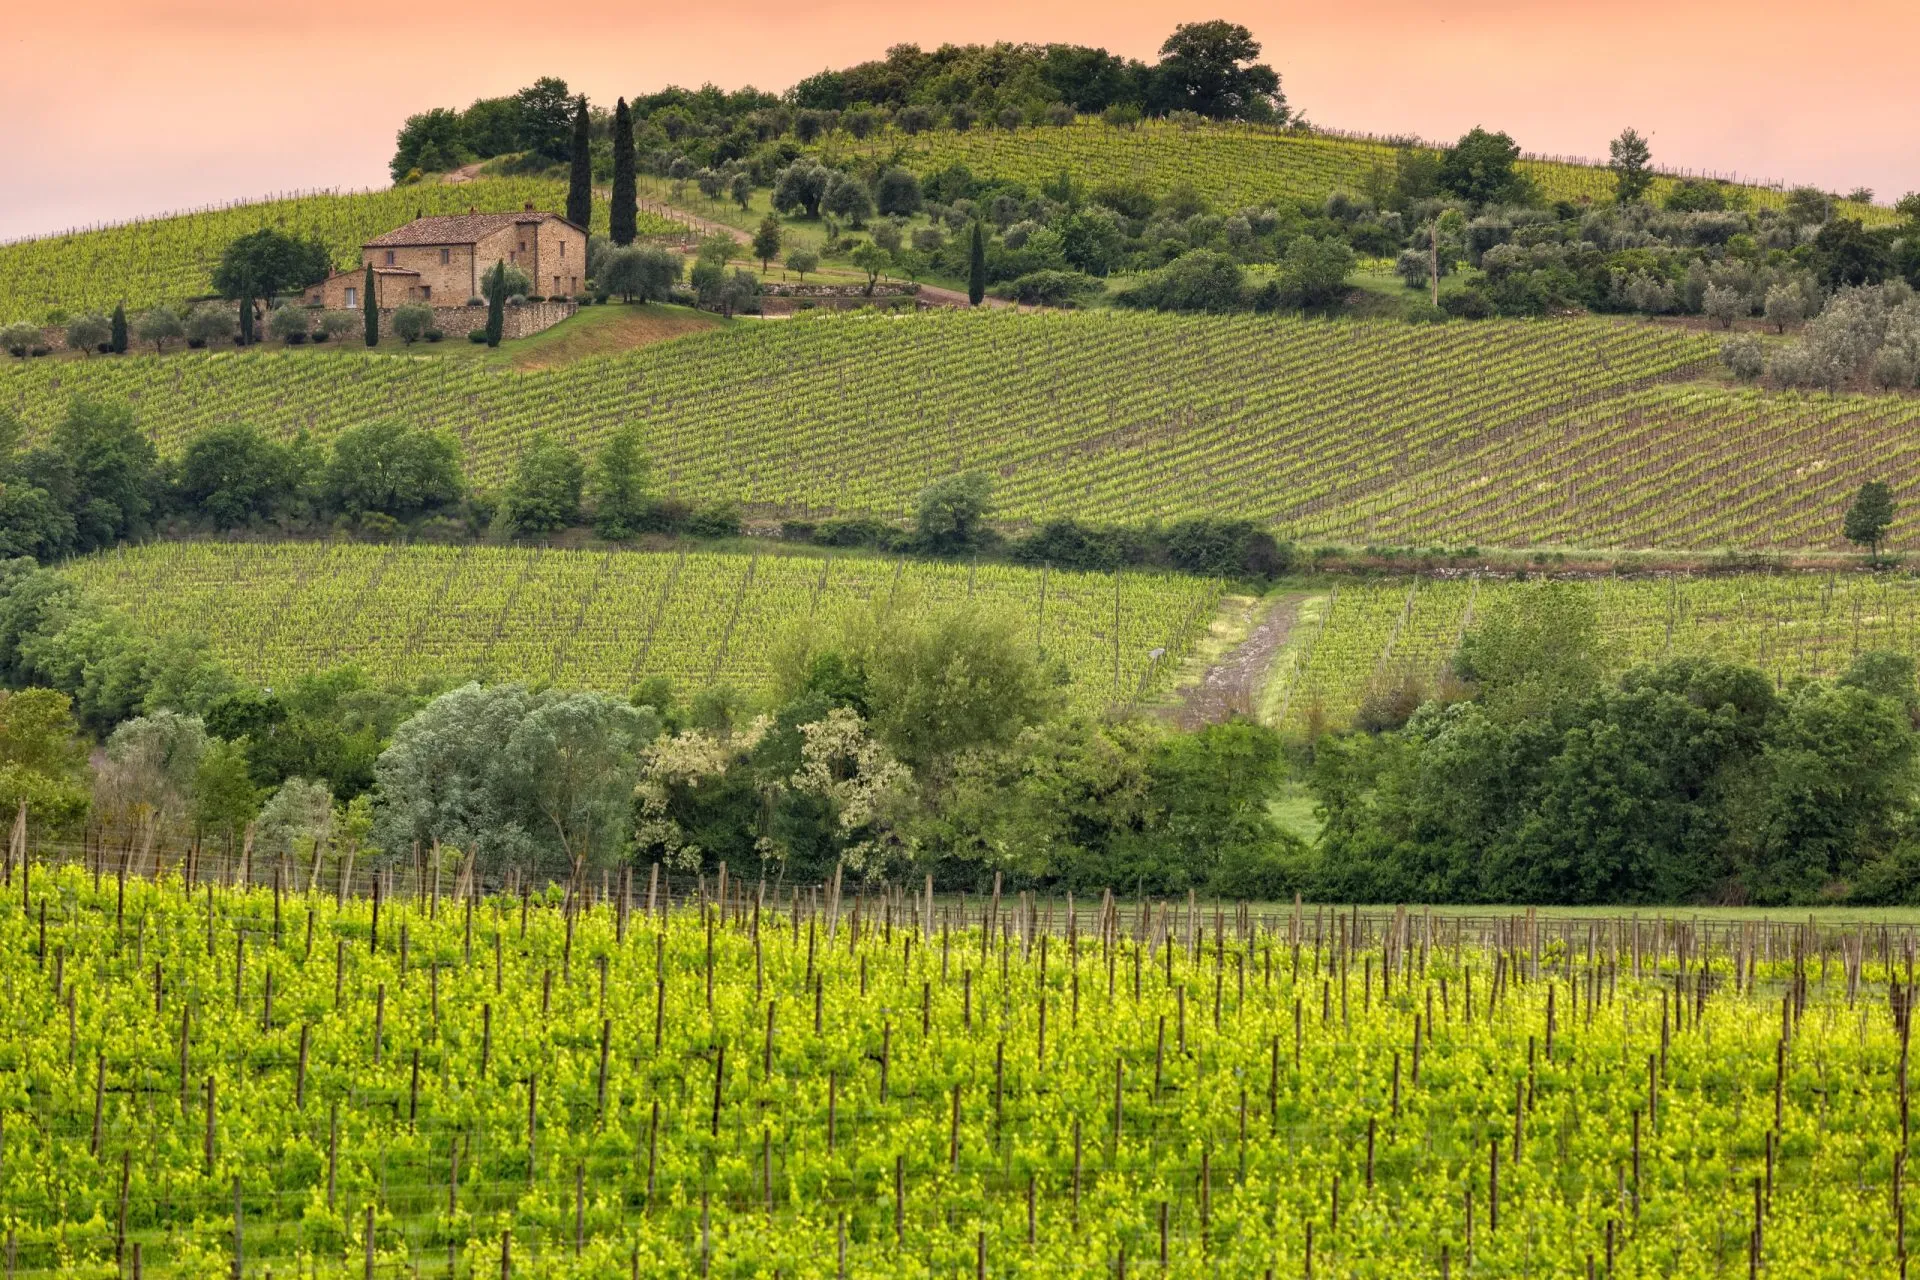 Vineyard near Montalcino, Tuscany, Italy